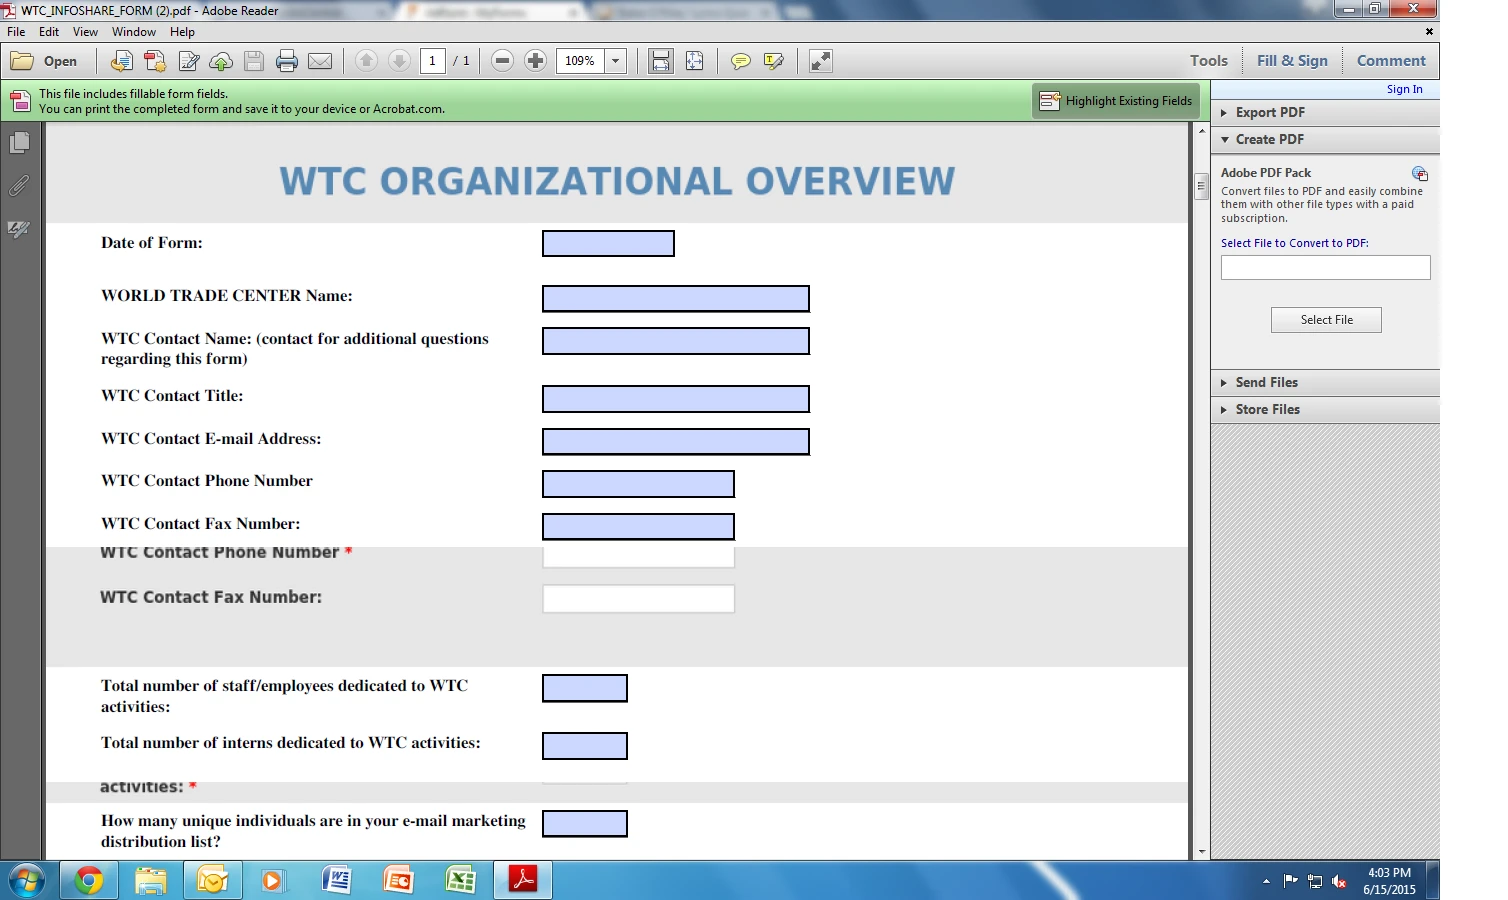 How do I turn my form into a pdf? Image 1 Screenshot 20